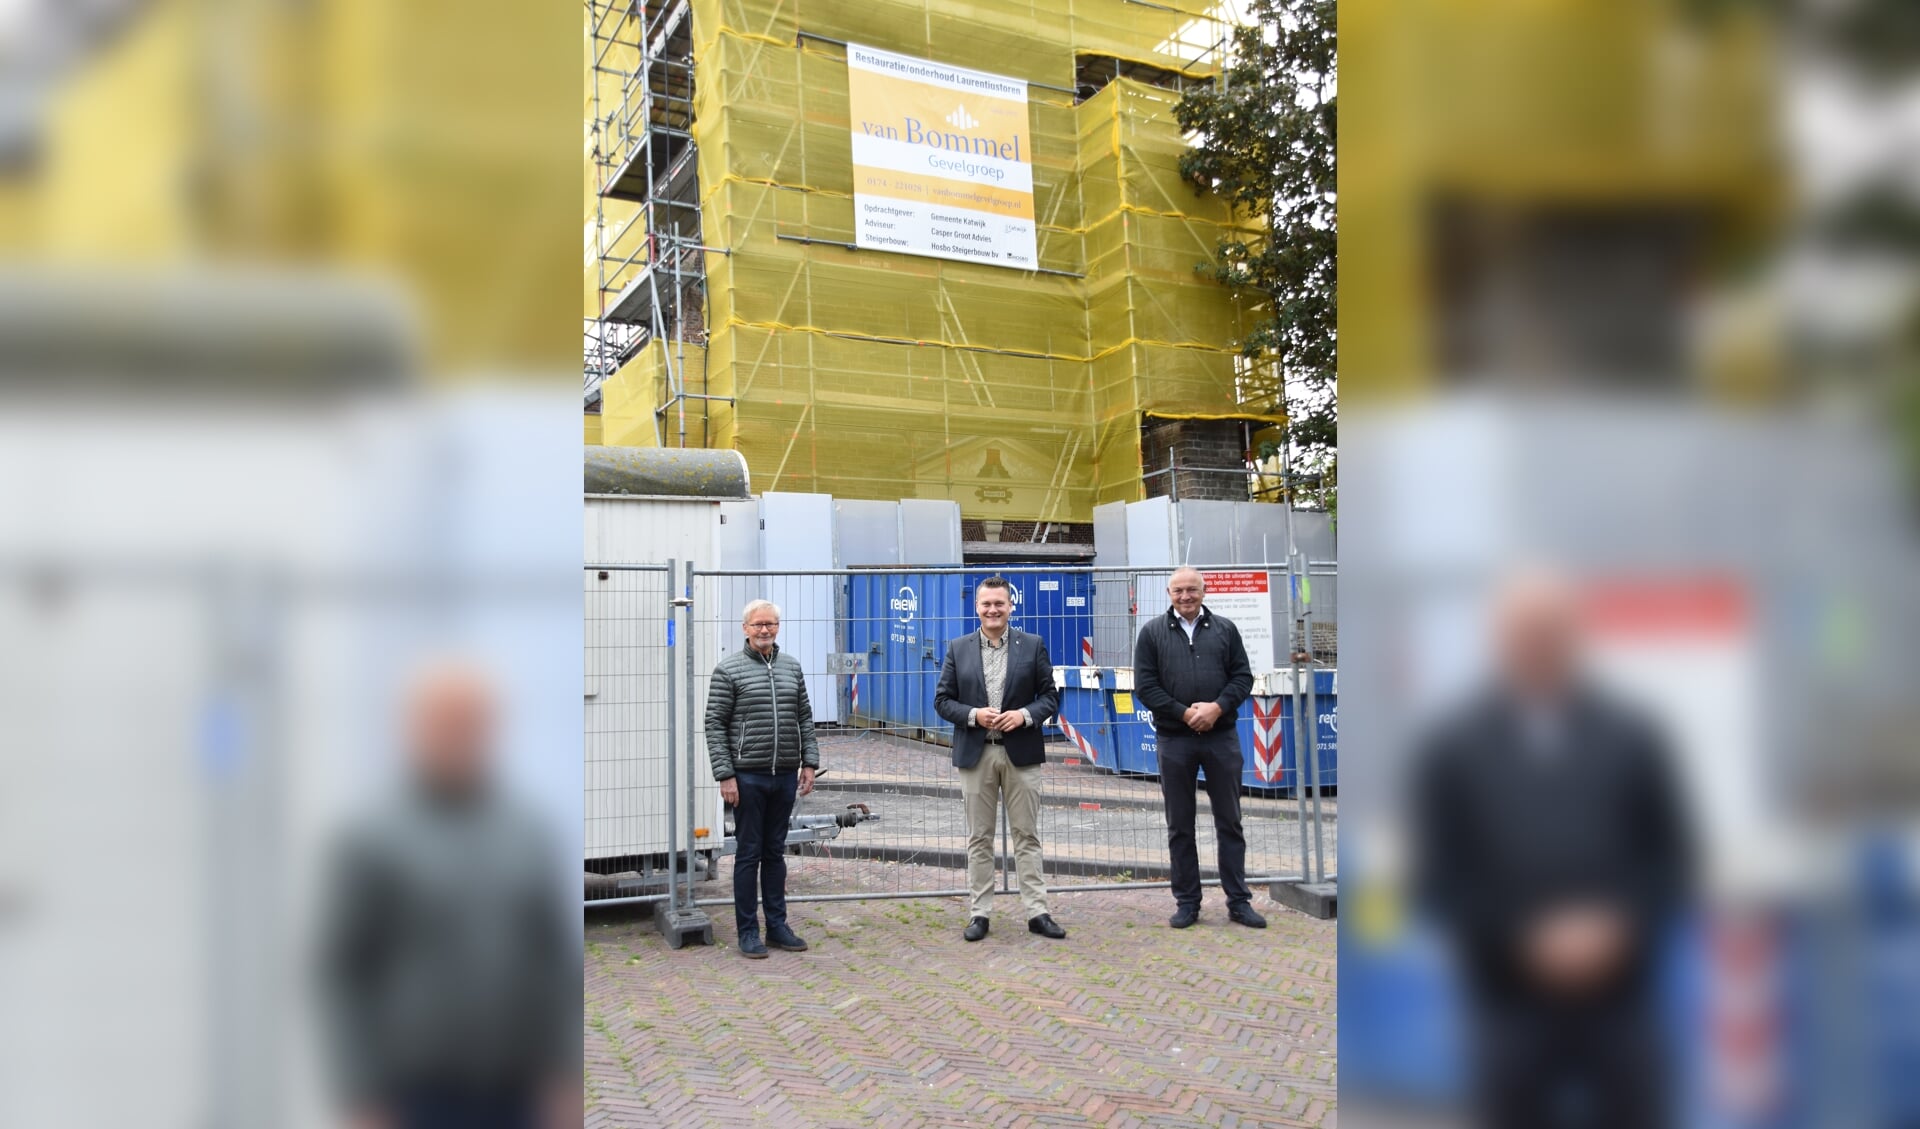 Aannemer Ruud van Bommel, wethouder Adger van Helden en projectleider Milo Dest voor de toren. | Foto: CvdS.